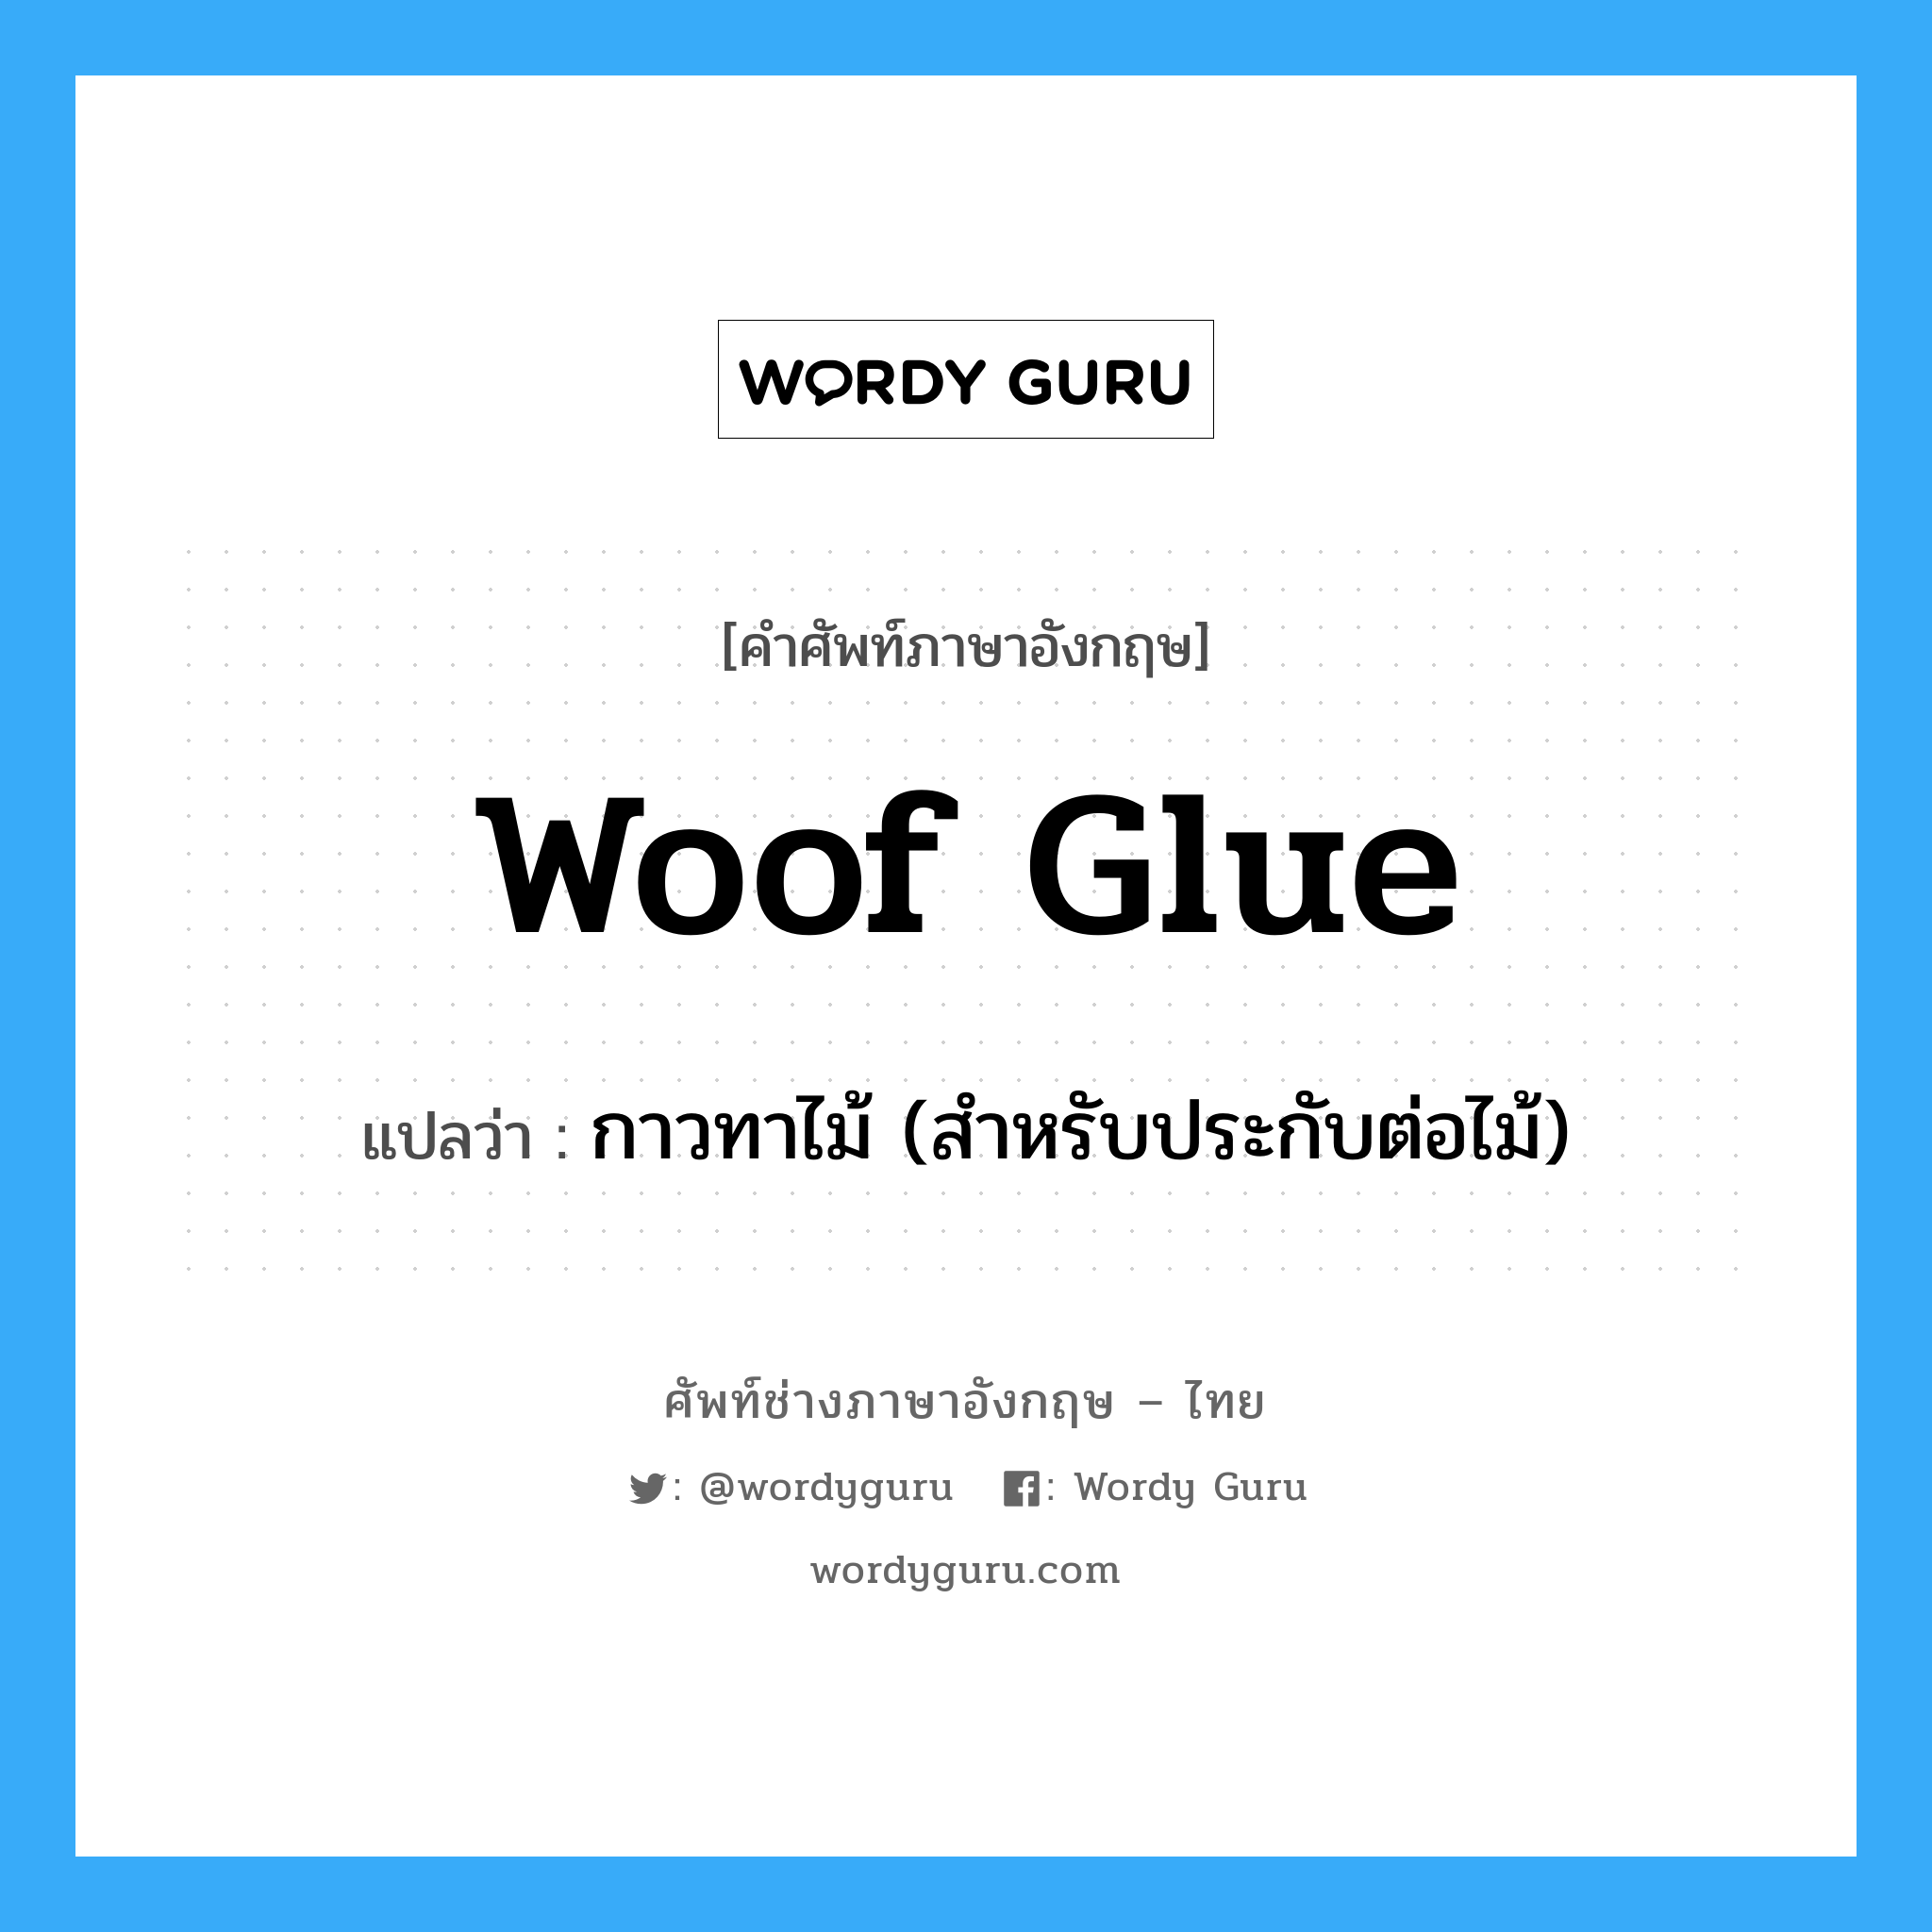 กาวทาไม้ (สำหรับประกับต่อไม้) ภาษาอังกฤษ?, คำศัพท์ช่างภาษาอังกฤษ - ไทย กาวทาไม้ (สำหรับประกับต่อไม้) คำศัพท์ภาษาอังกฤษ กาวทาไม้ (สำหรับประกับต่อไม้) แปลว่า woof glue